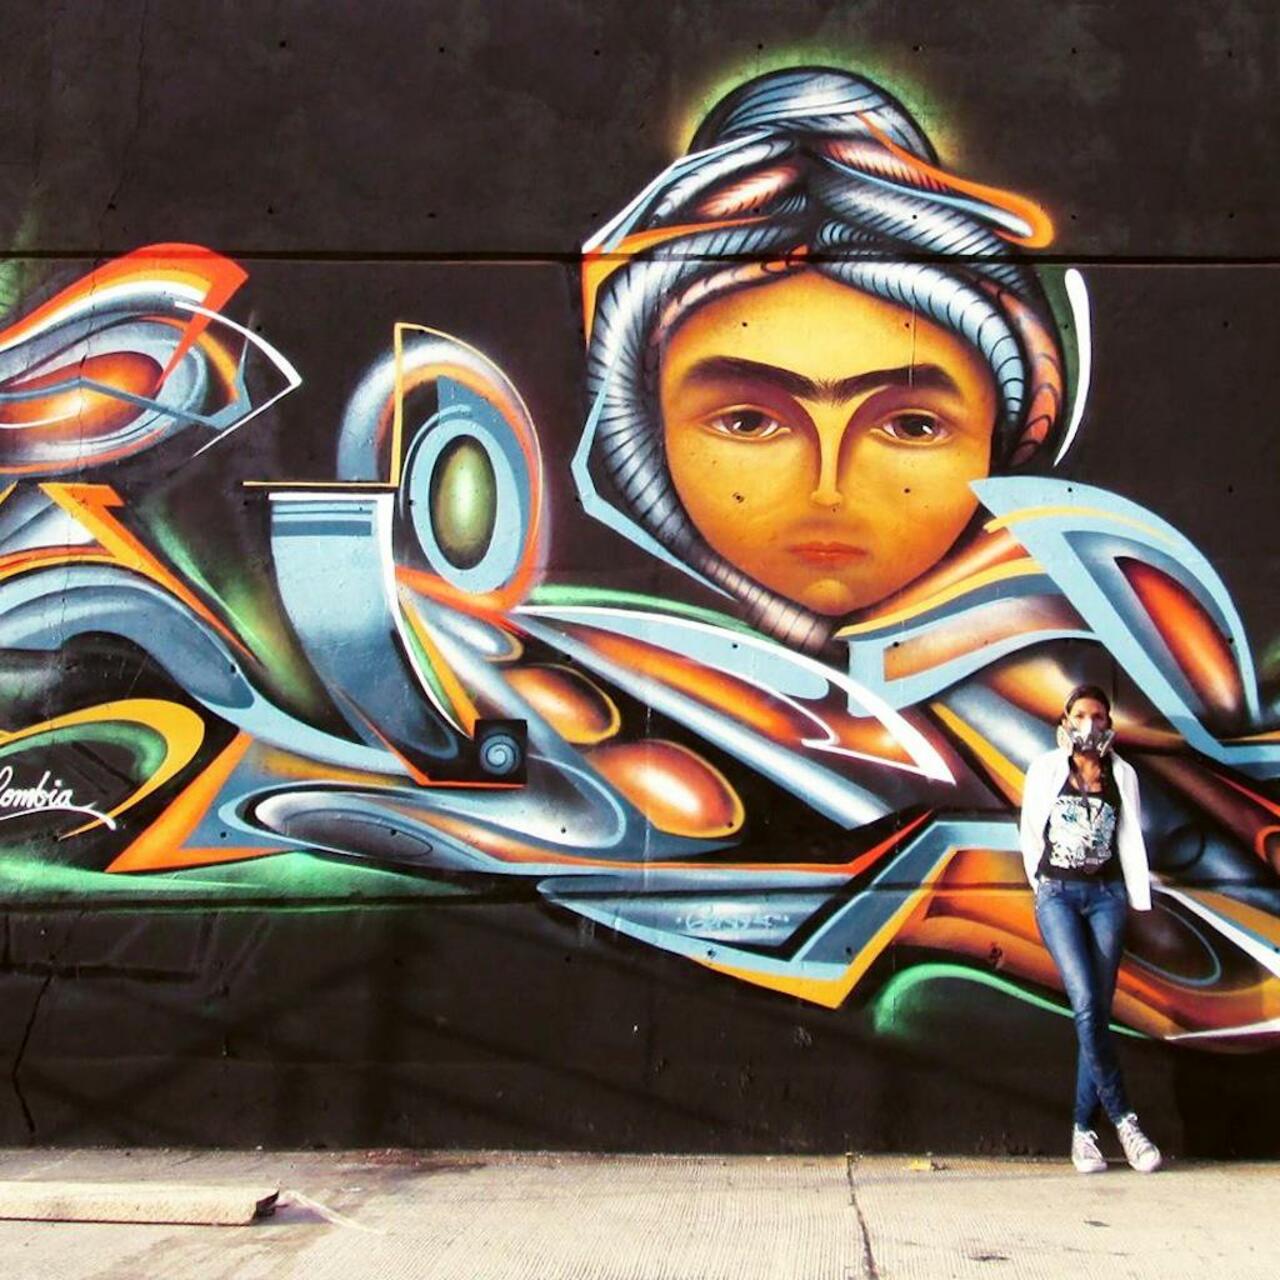 RT @fullyfuller: Artist Zurik from Colombia  #murals #art #streetart #urbanart #Graffiti #Zurik http://t.co/1vQBTRUTME